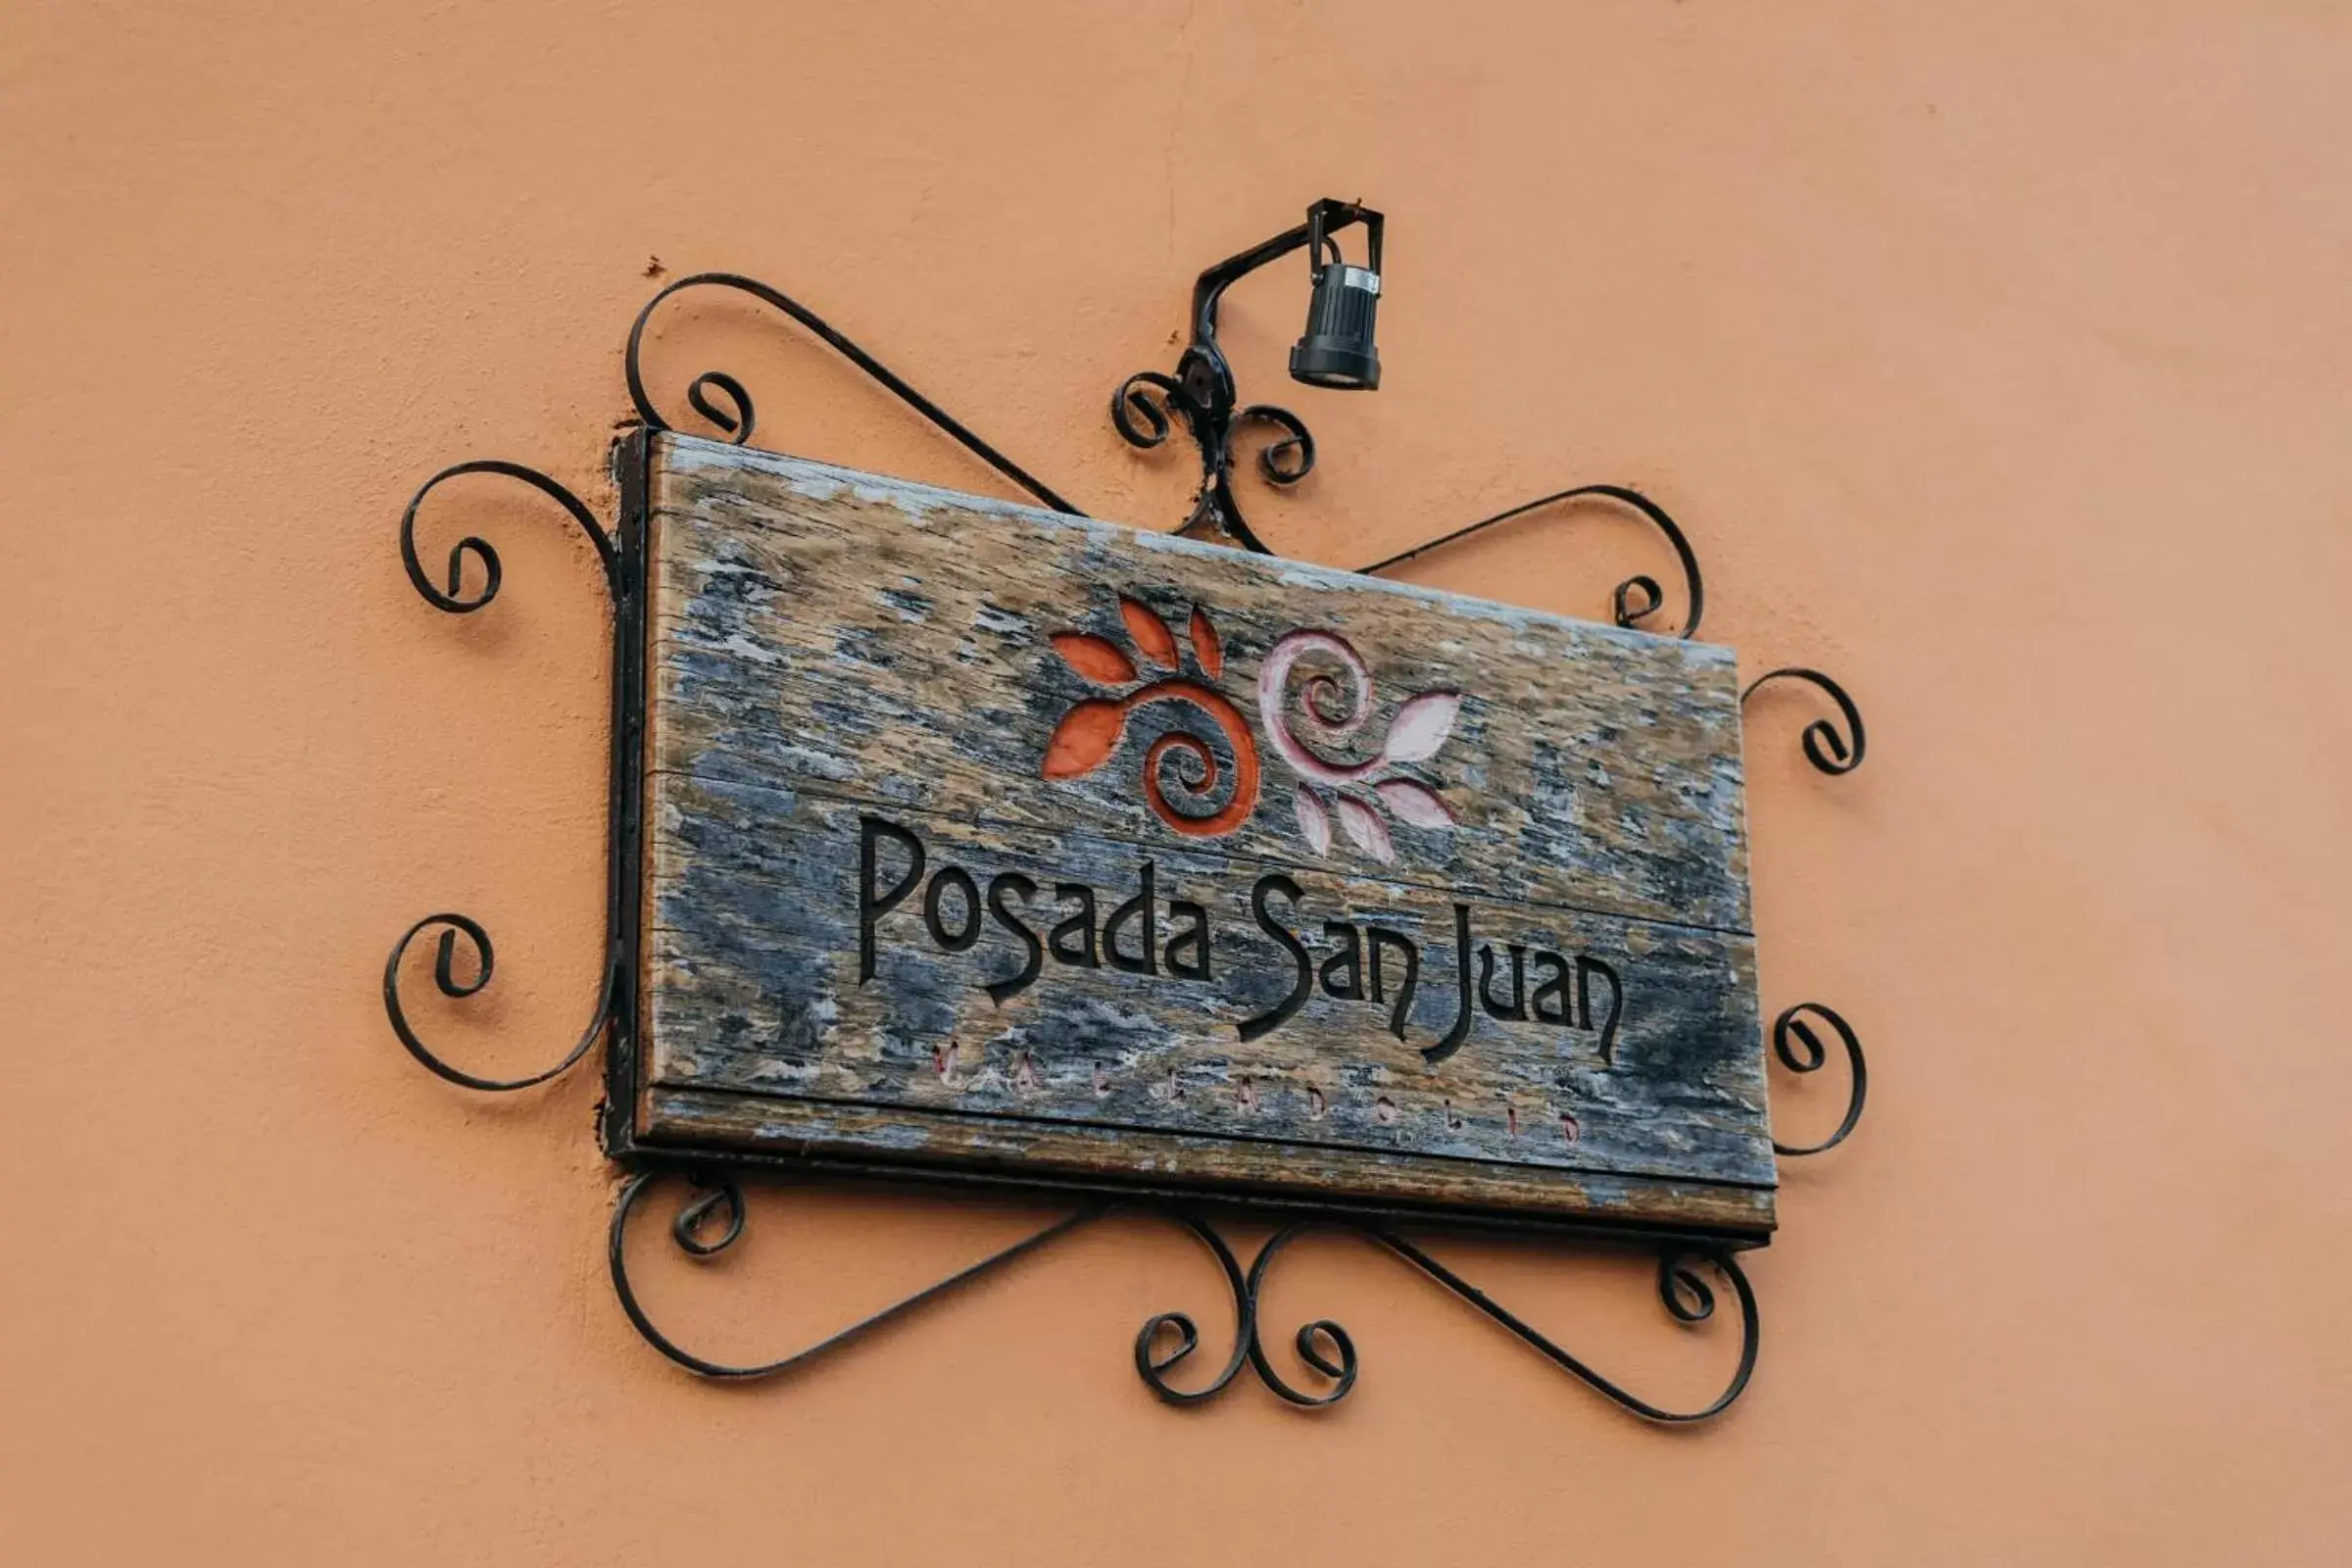 Property building in Hotel Posada San Juan